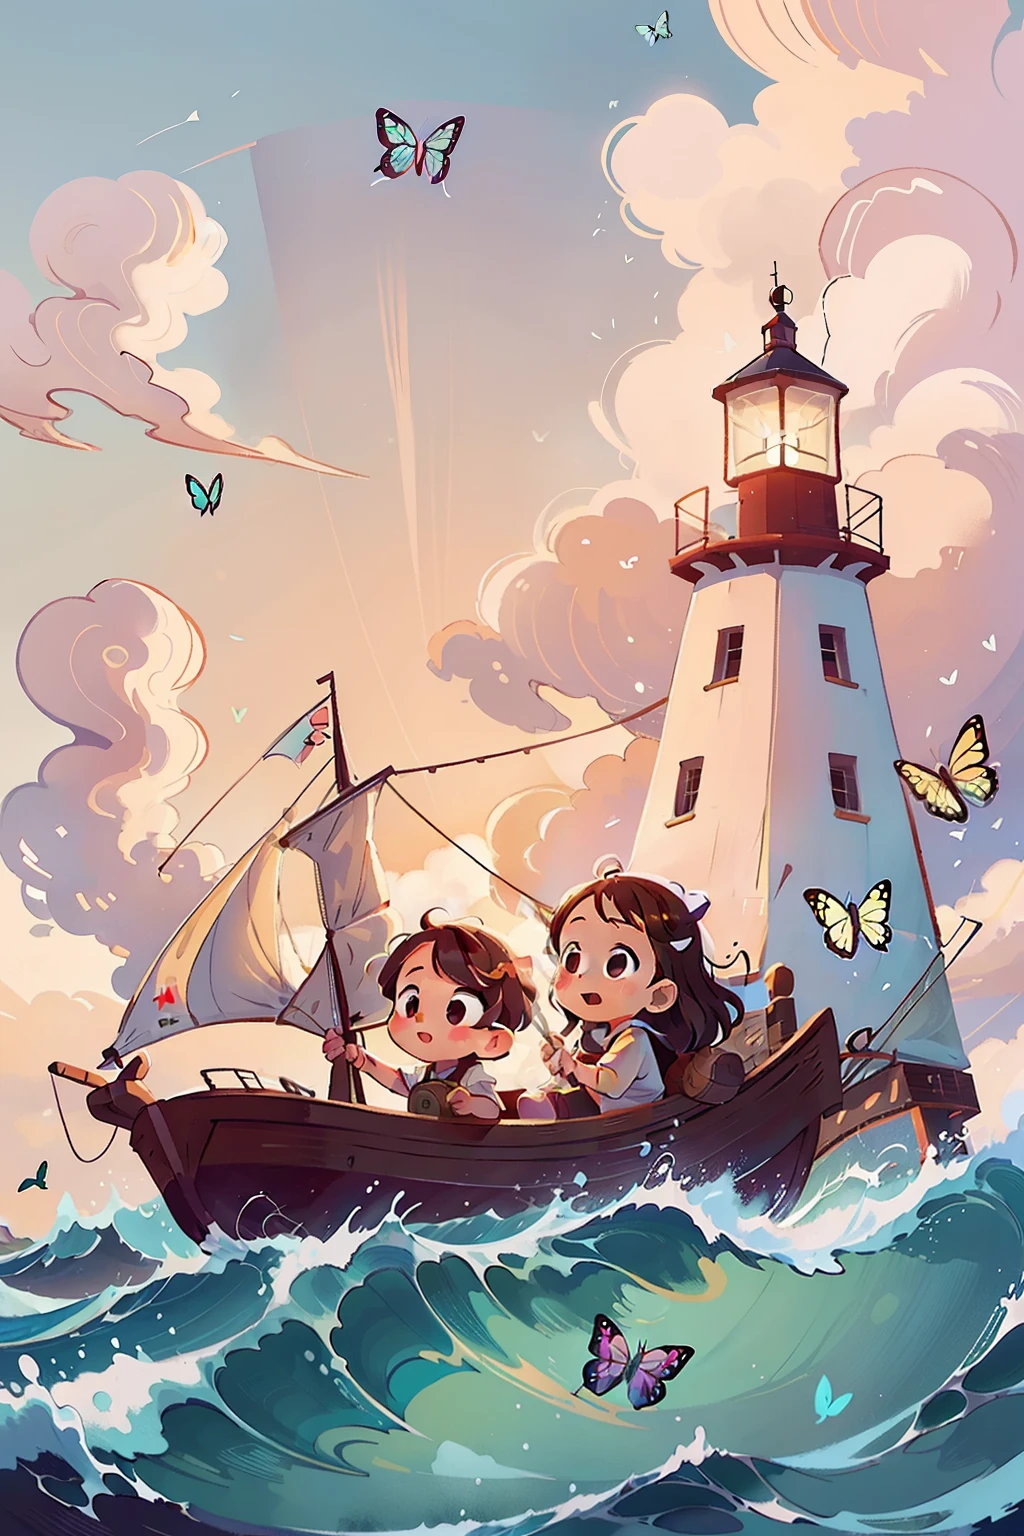 Создает изображение двух очень маленьких девочек, плывущих на лодке., волны, море, небо с белыми облаками. Красочные бабочки, маяк на заднем плане,